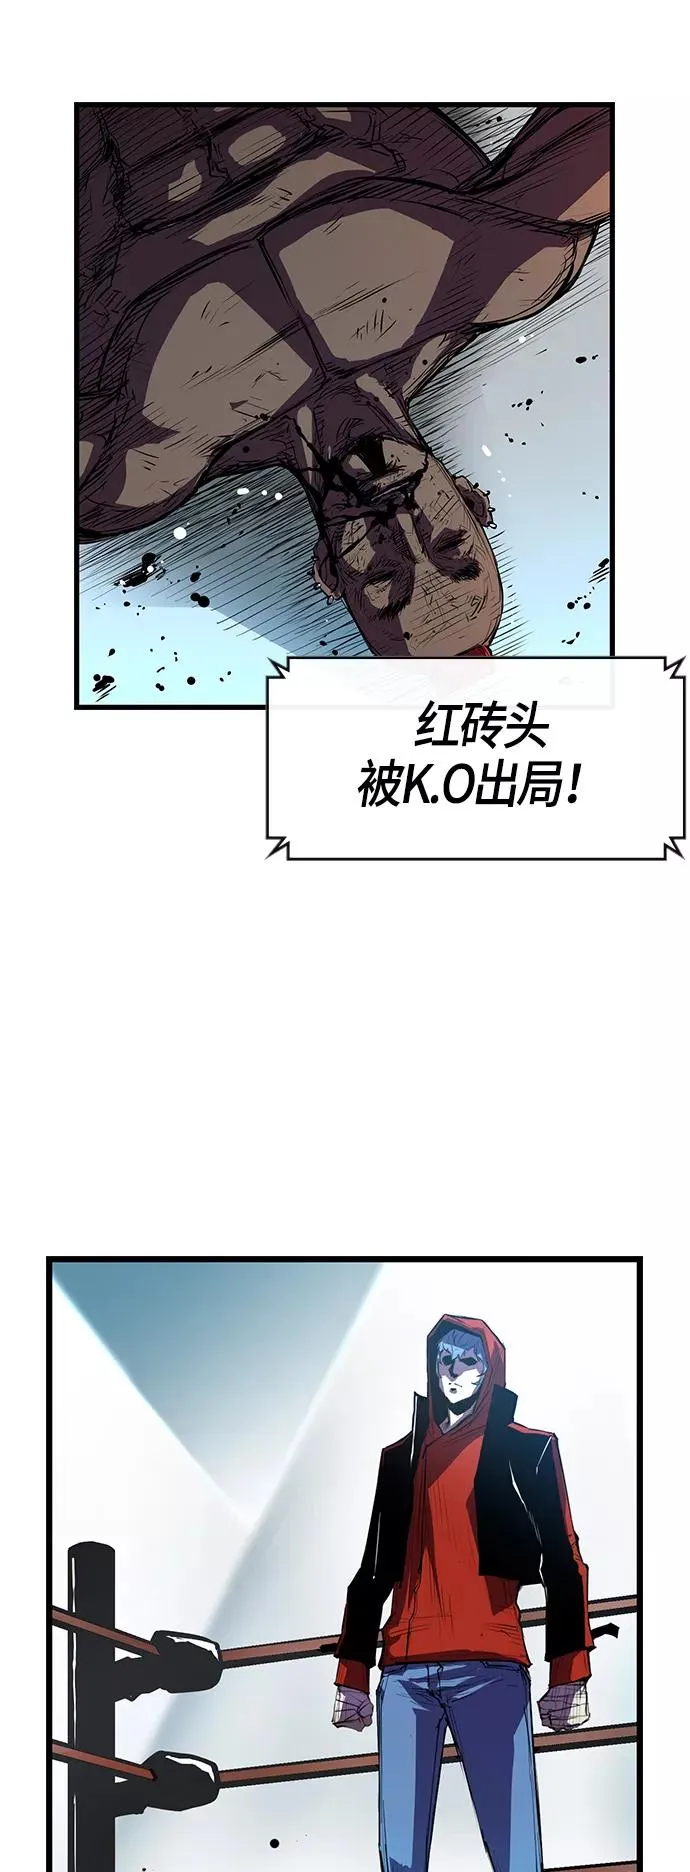 翰林体育馆北京漫画,第4话2图